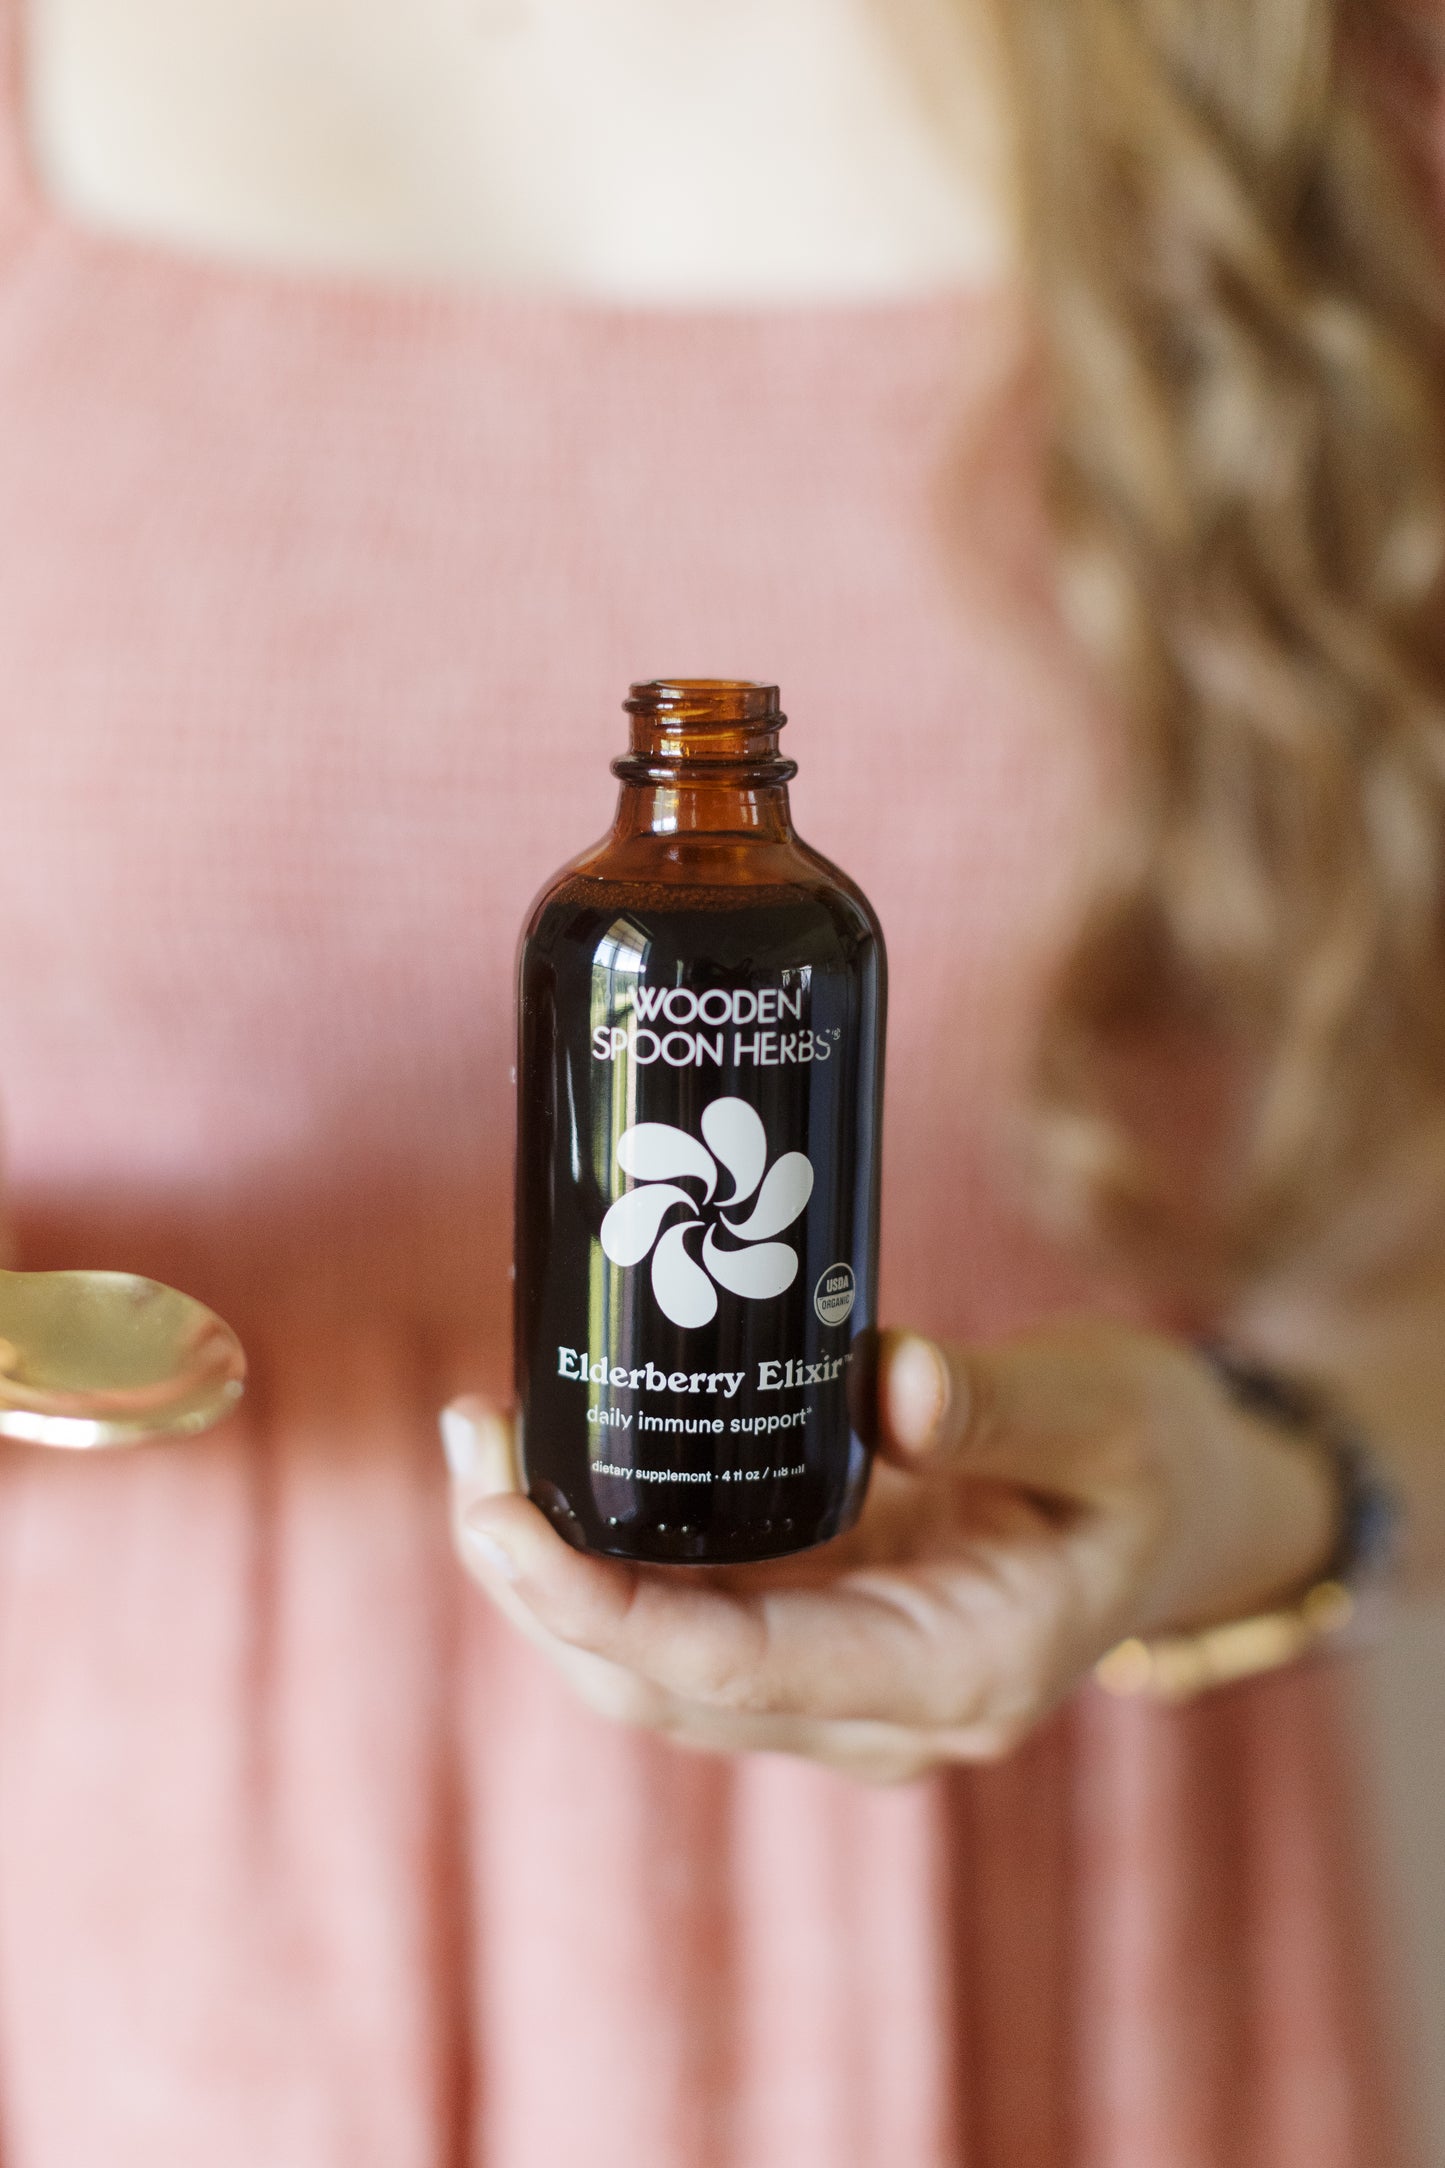 A bottle of Wooden Spoon Herbs' Elderberry Elixir